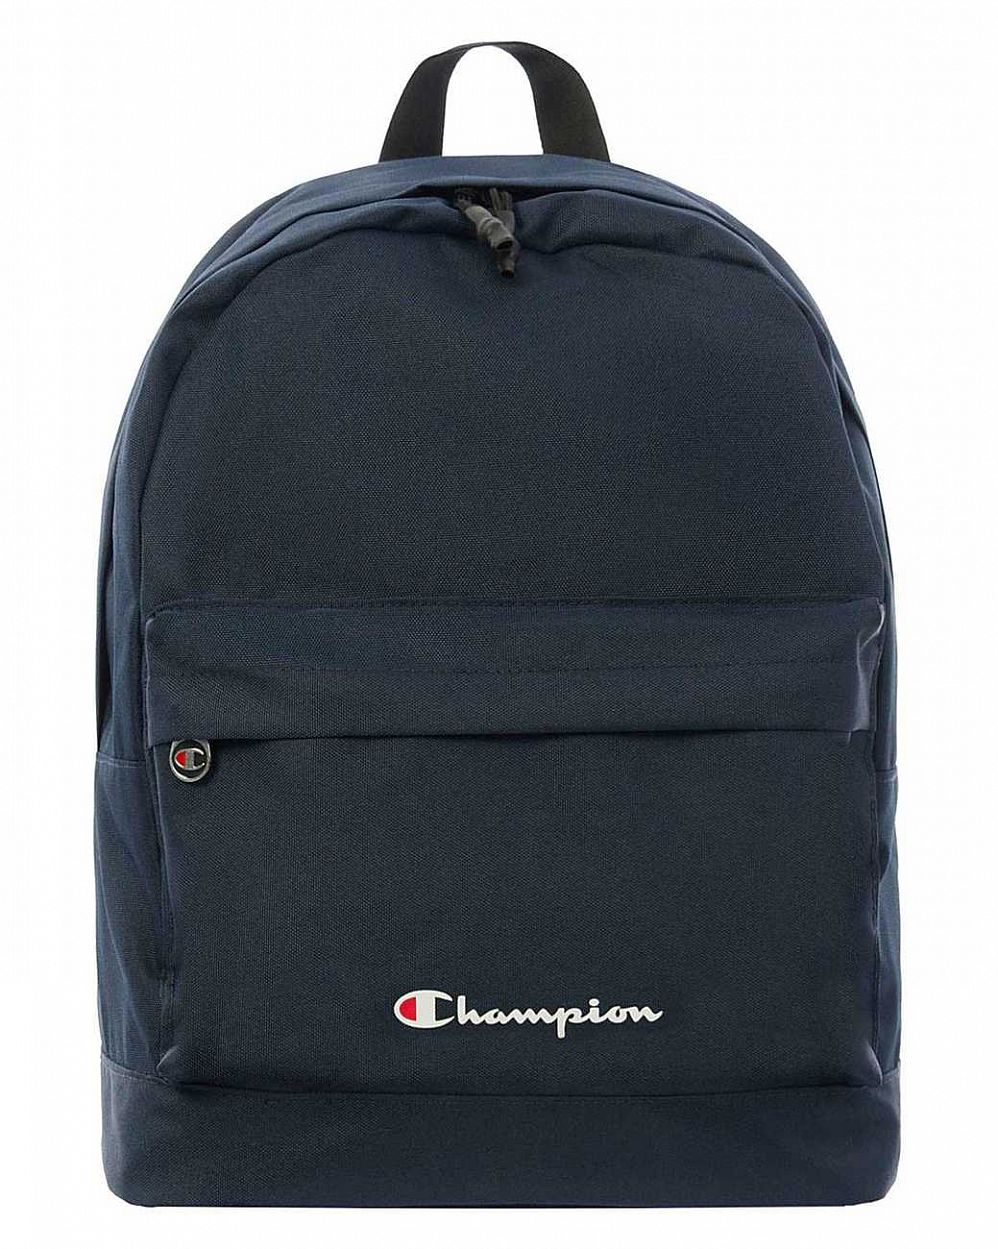 Рюкзак водостойкий с отделом для 13 ноутбука Champion Classic Backpack Deep Navy отзывы